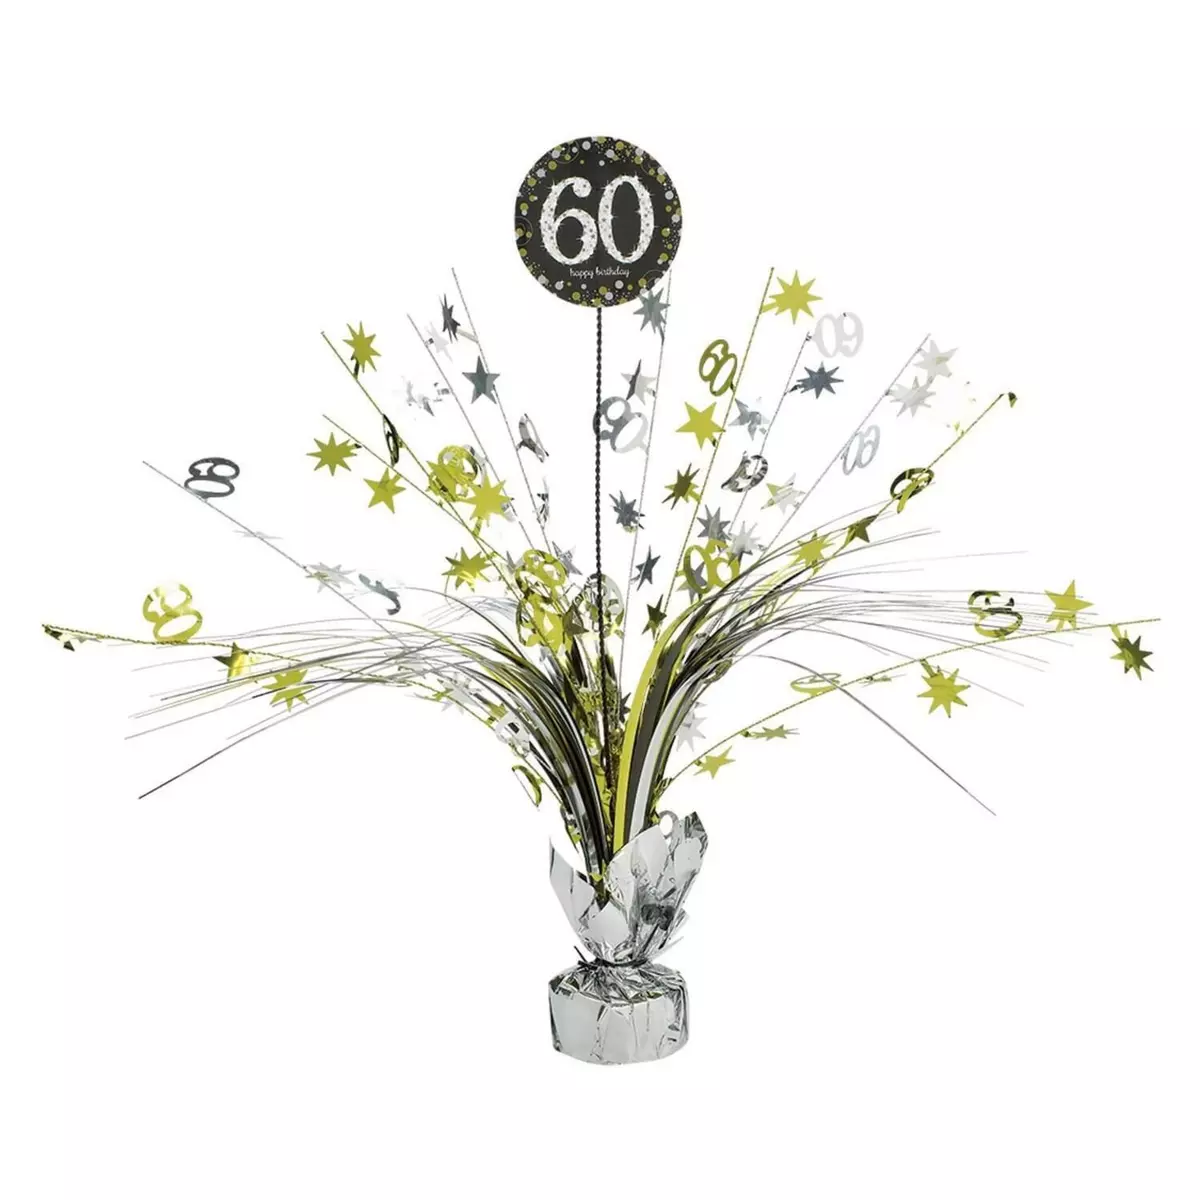  Centre de Table en papier métallisé - 60 Sparkling Celebration - Doré 45.7 cm